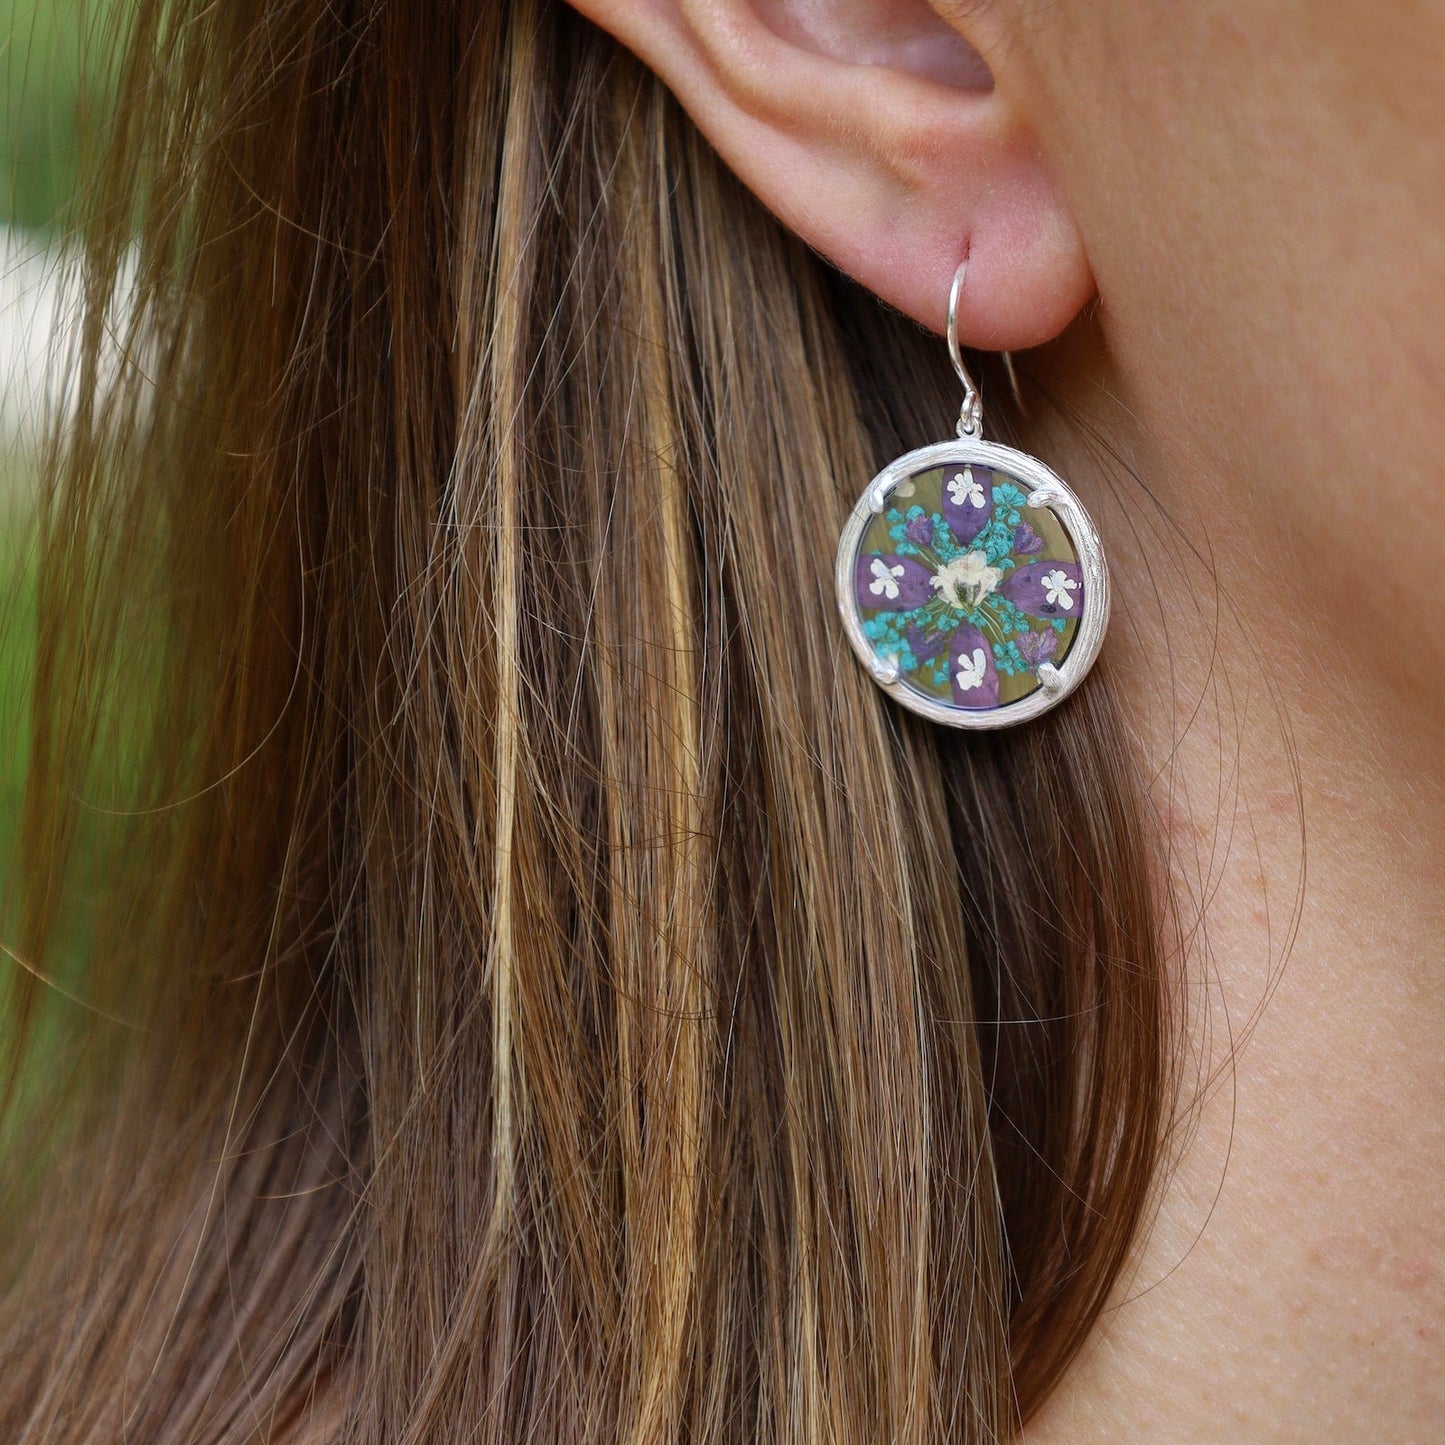 EAR Wisdom Small Mandala Earrings- Recycled Sterling Silver